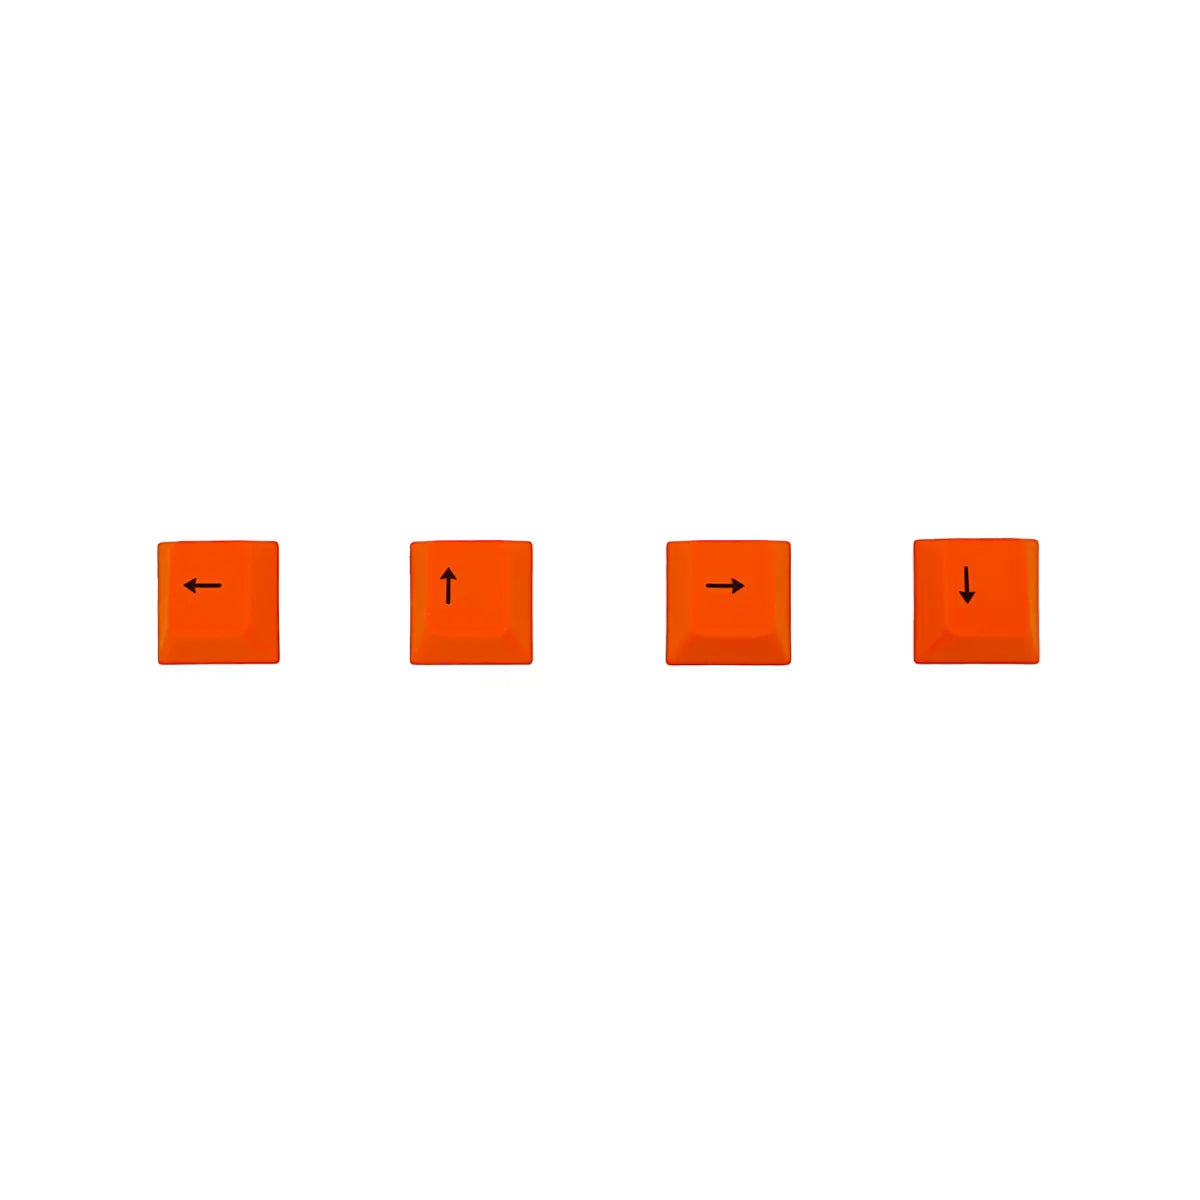 カラーキーキャップセット - オレンジ矢印キー